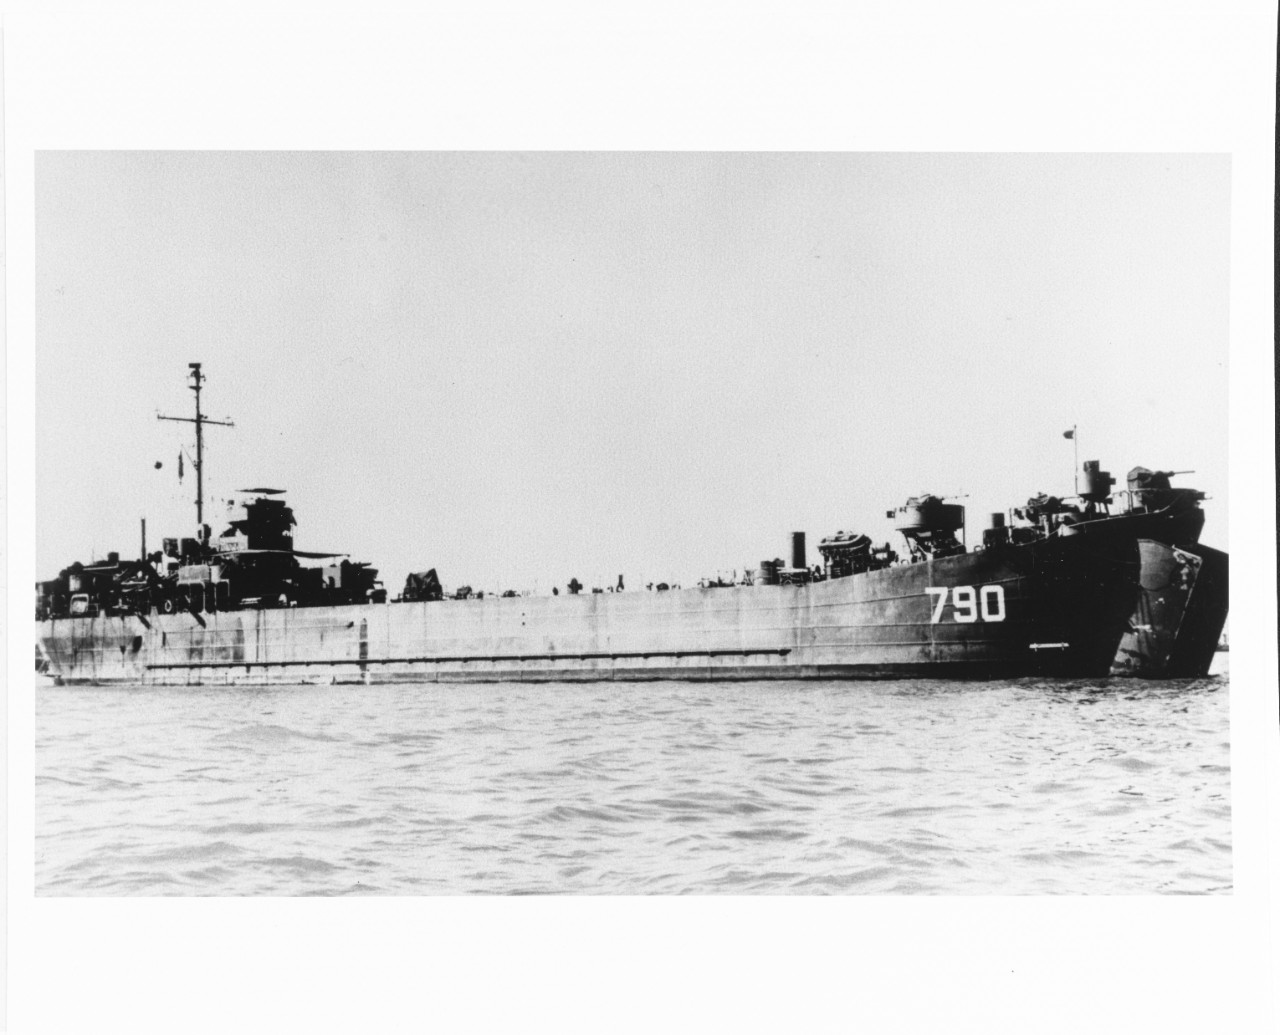 USS LST-790